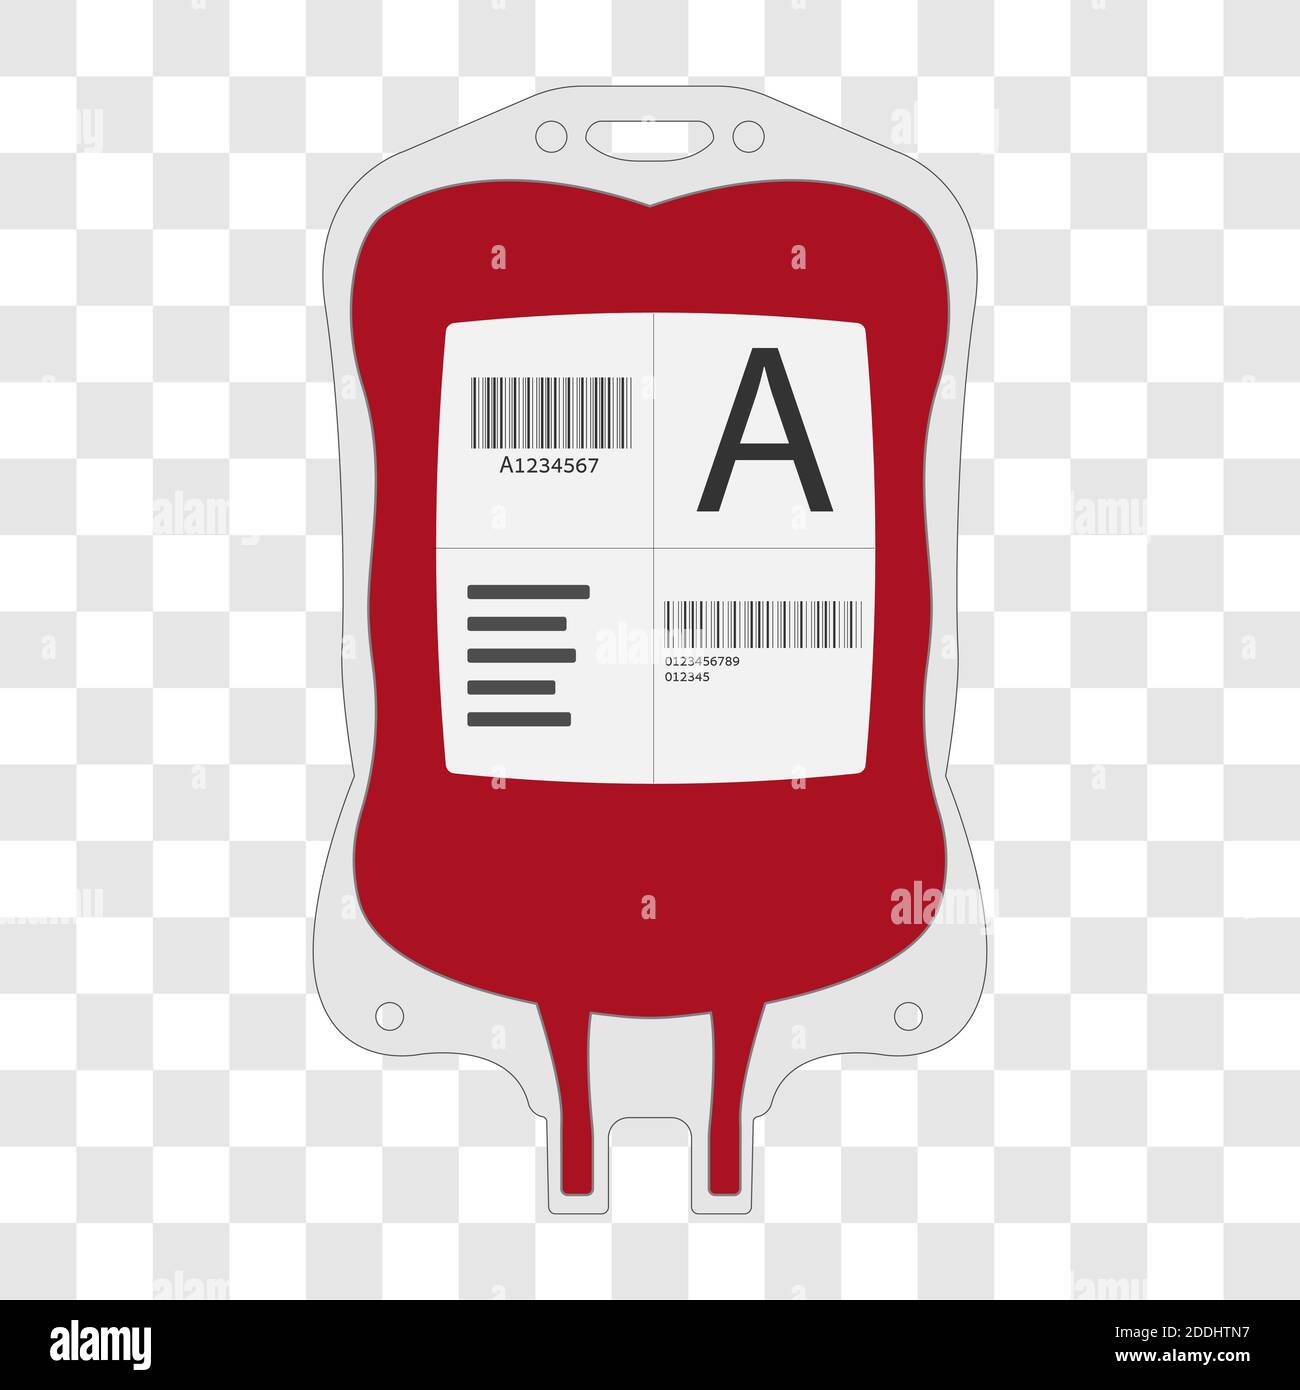 Sacchetto di plastica per donazione di sangue. Illustrazione vettoriale a disegno piatto per uso medico isolata su sfondo trasparente. Illustrazione Vettoriale